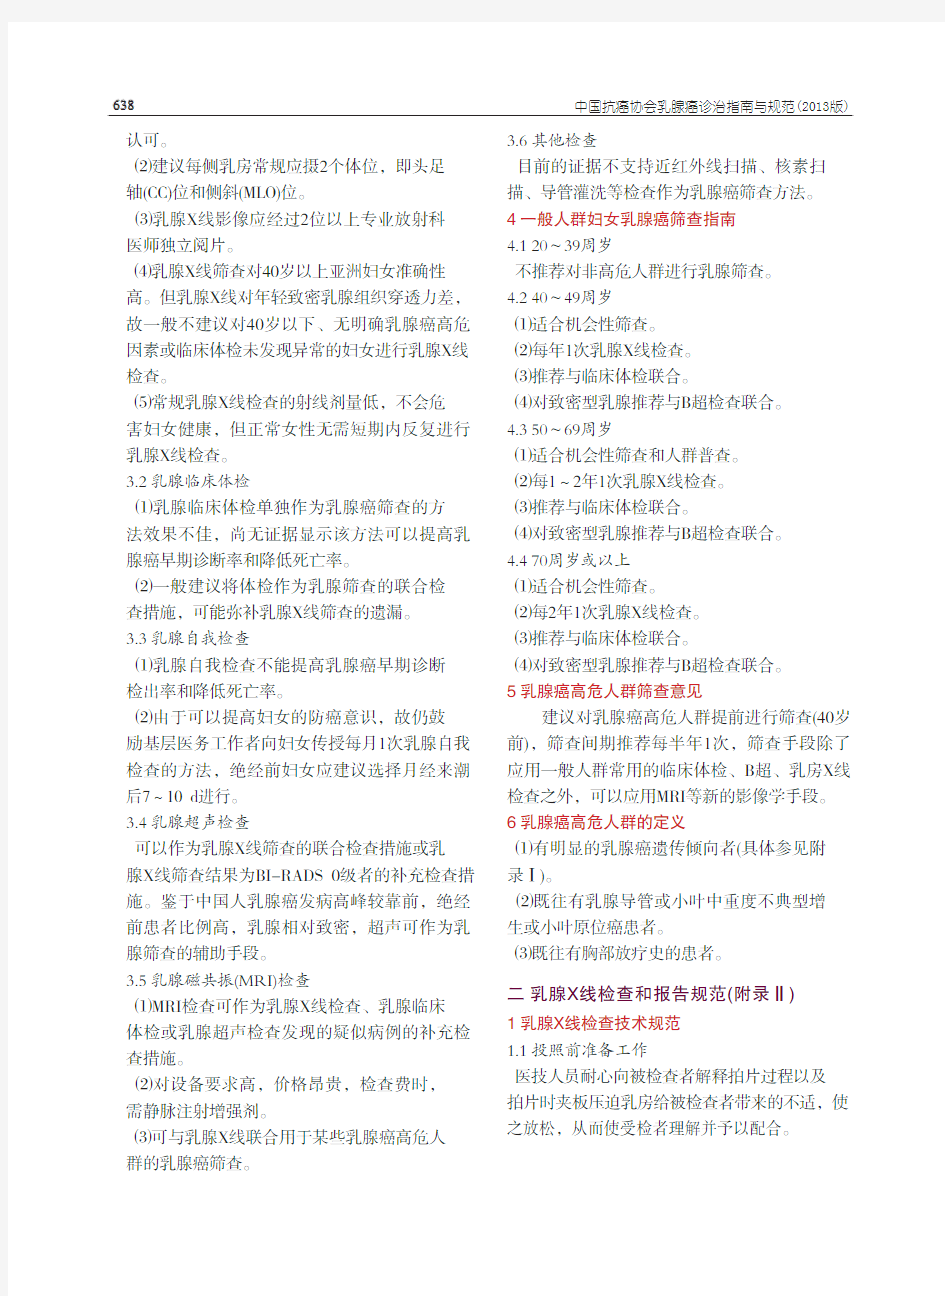 中国抗癌协会乳腺癌诊治指南与规范(2013版)